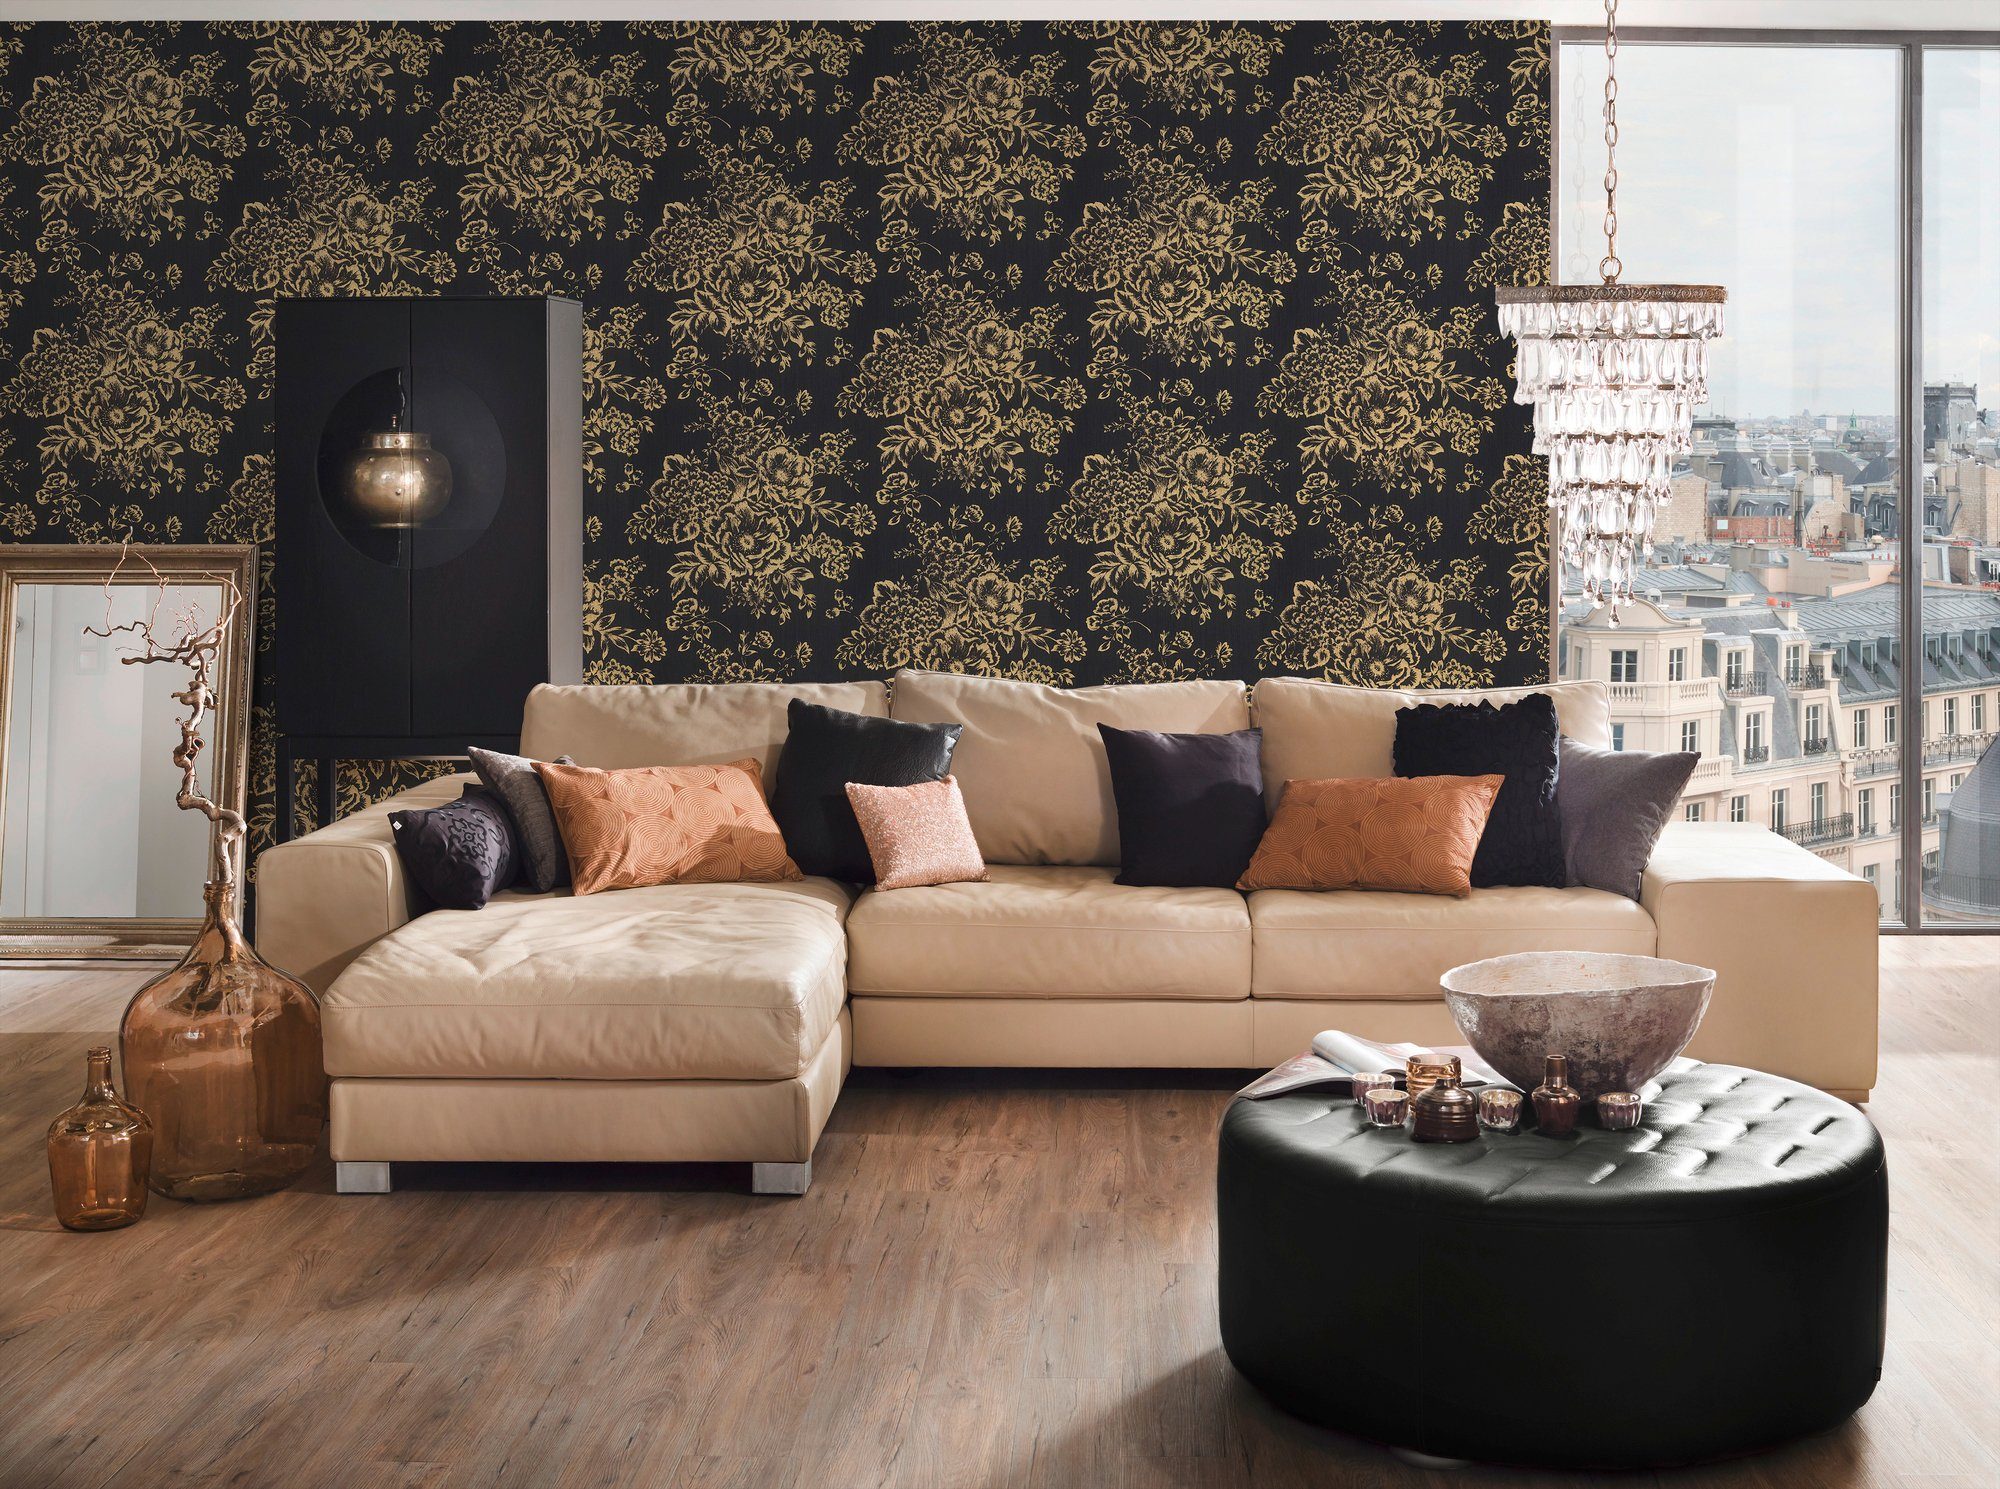 Architects Paper Textiltapete Metallic floral, Silk, glänzend, samtig, Tapete gold/schwarz Blumen Barocktapete matt